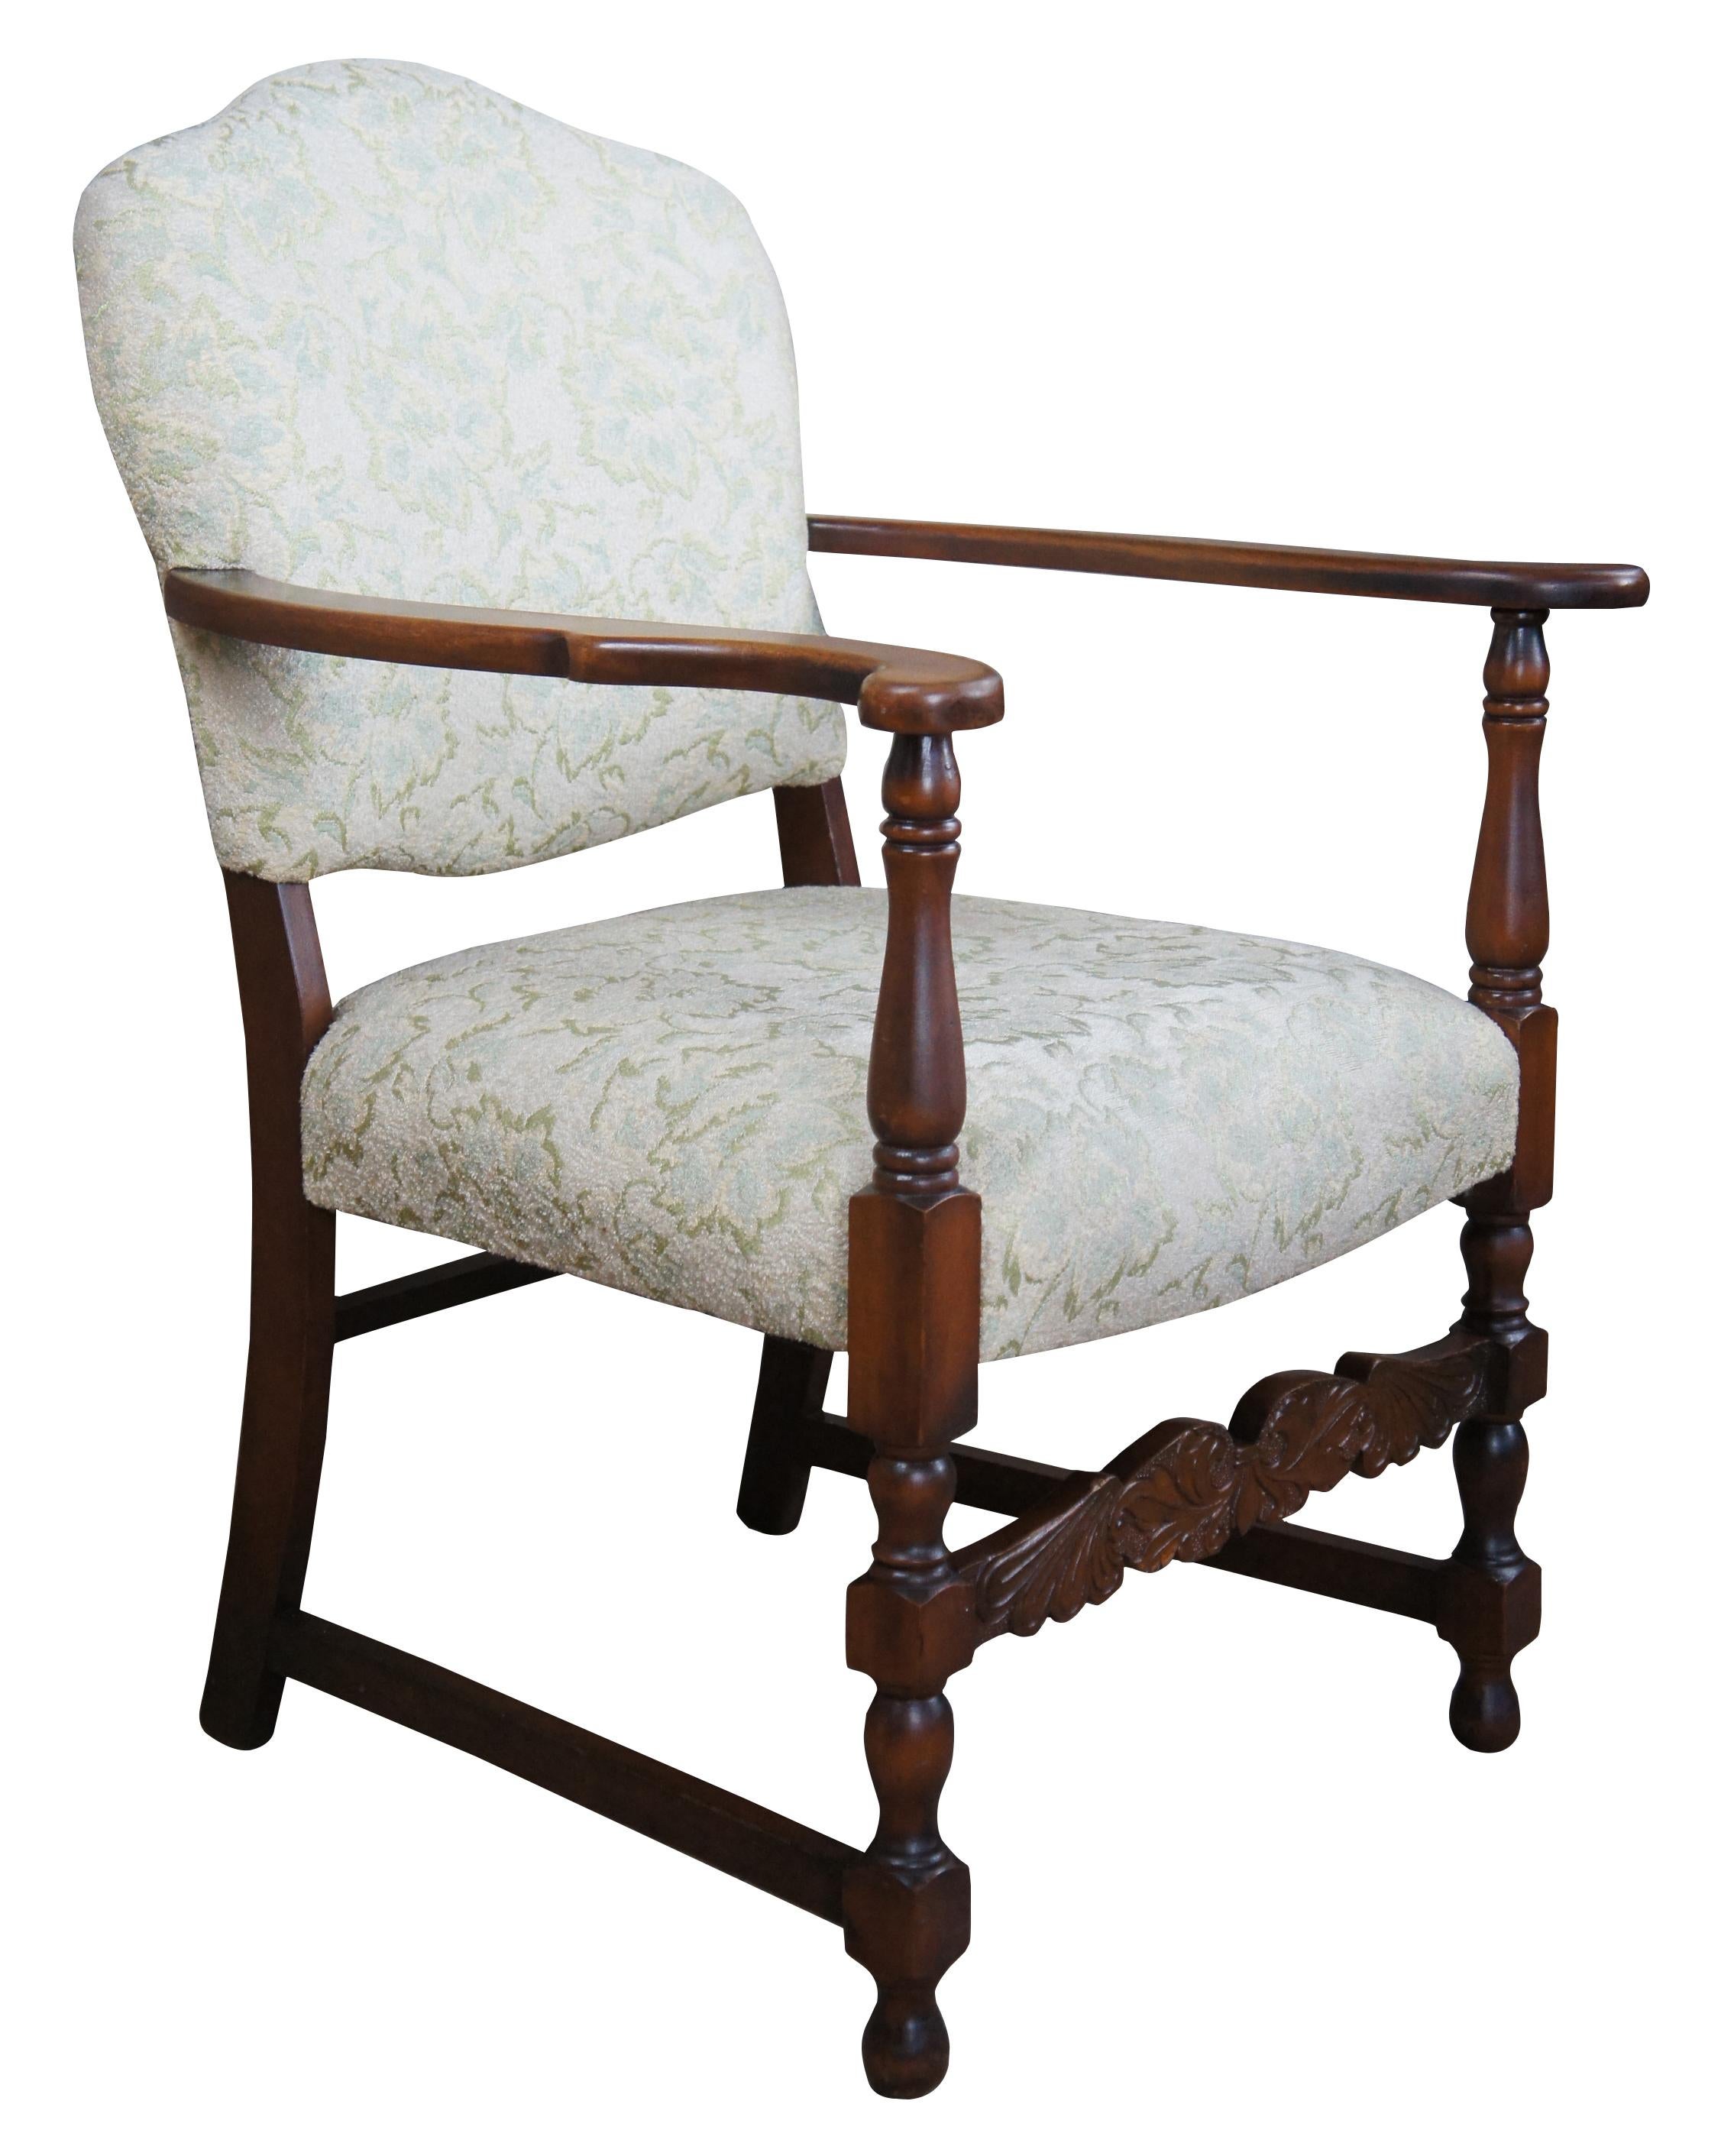 Spanischer Revival-Sessel aus der Mitte des 20. Jahrhunderts. Aus Mahagoni mit ausgestellten Armen, gedrechselten Stützen und einer geschnitzten Flügeltraverse. Der Stuhl ist entlang der Sitzfläche und der Rückenlehne mit einem floralen Muster